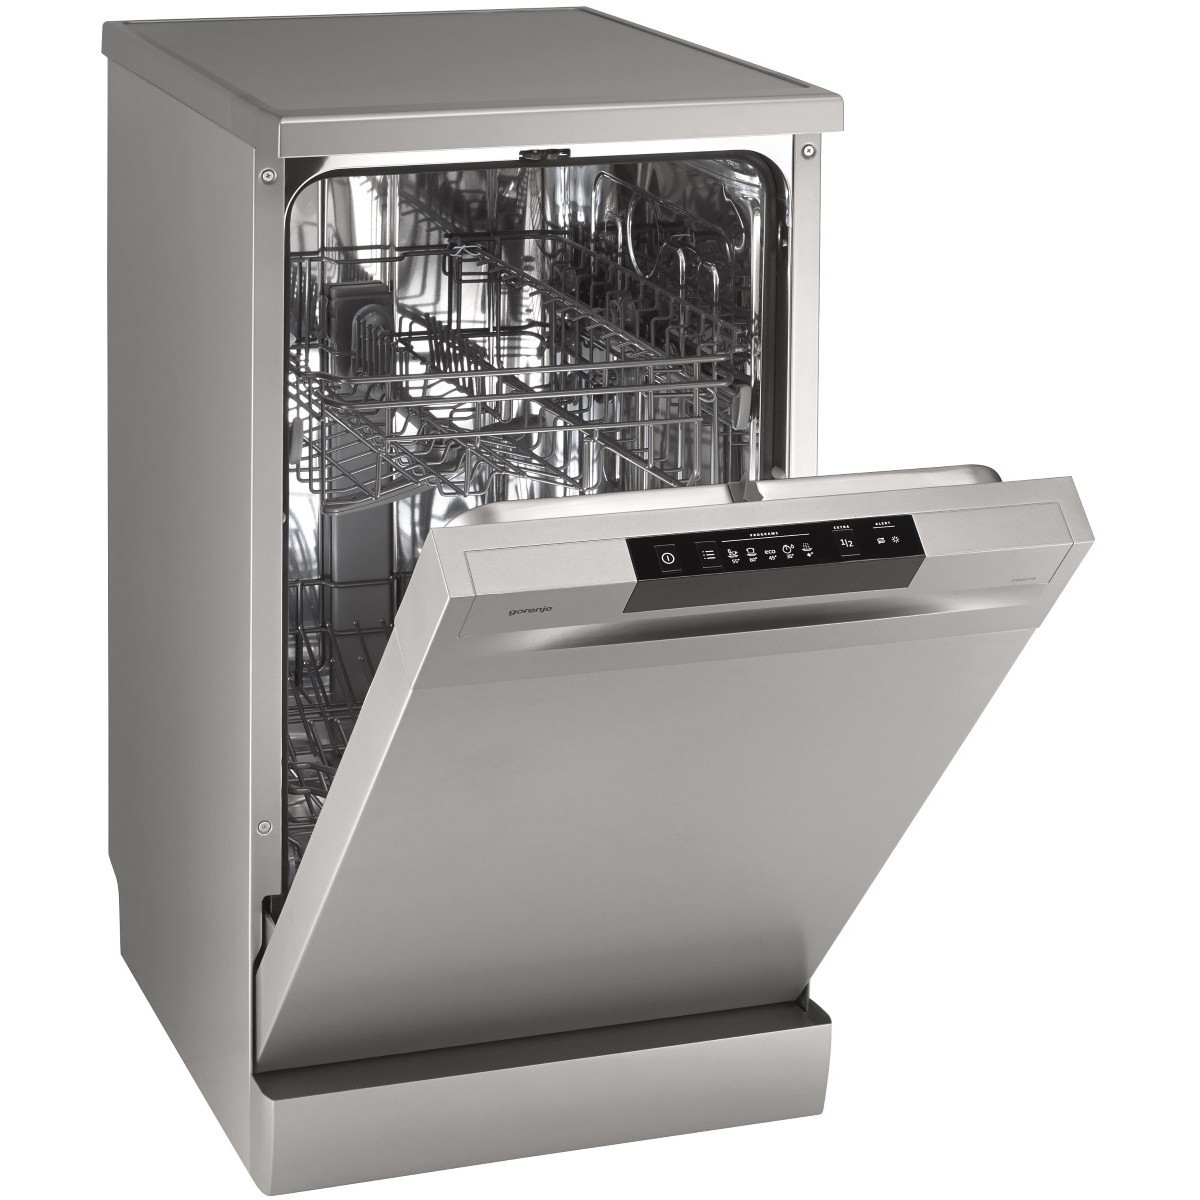 Посудомоечная машина горение встраиваемая 60 см. Посудомоечная машина Gorenje gs52040s. Посудомоечная машина Gorenje gs52010w. Gorenje gs52010s посудомоечная. Посудомоечная машина Gorenje gs531e10w.